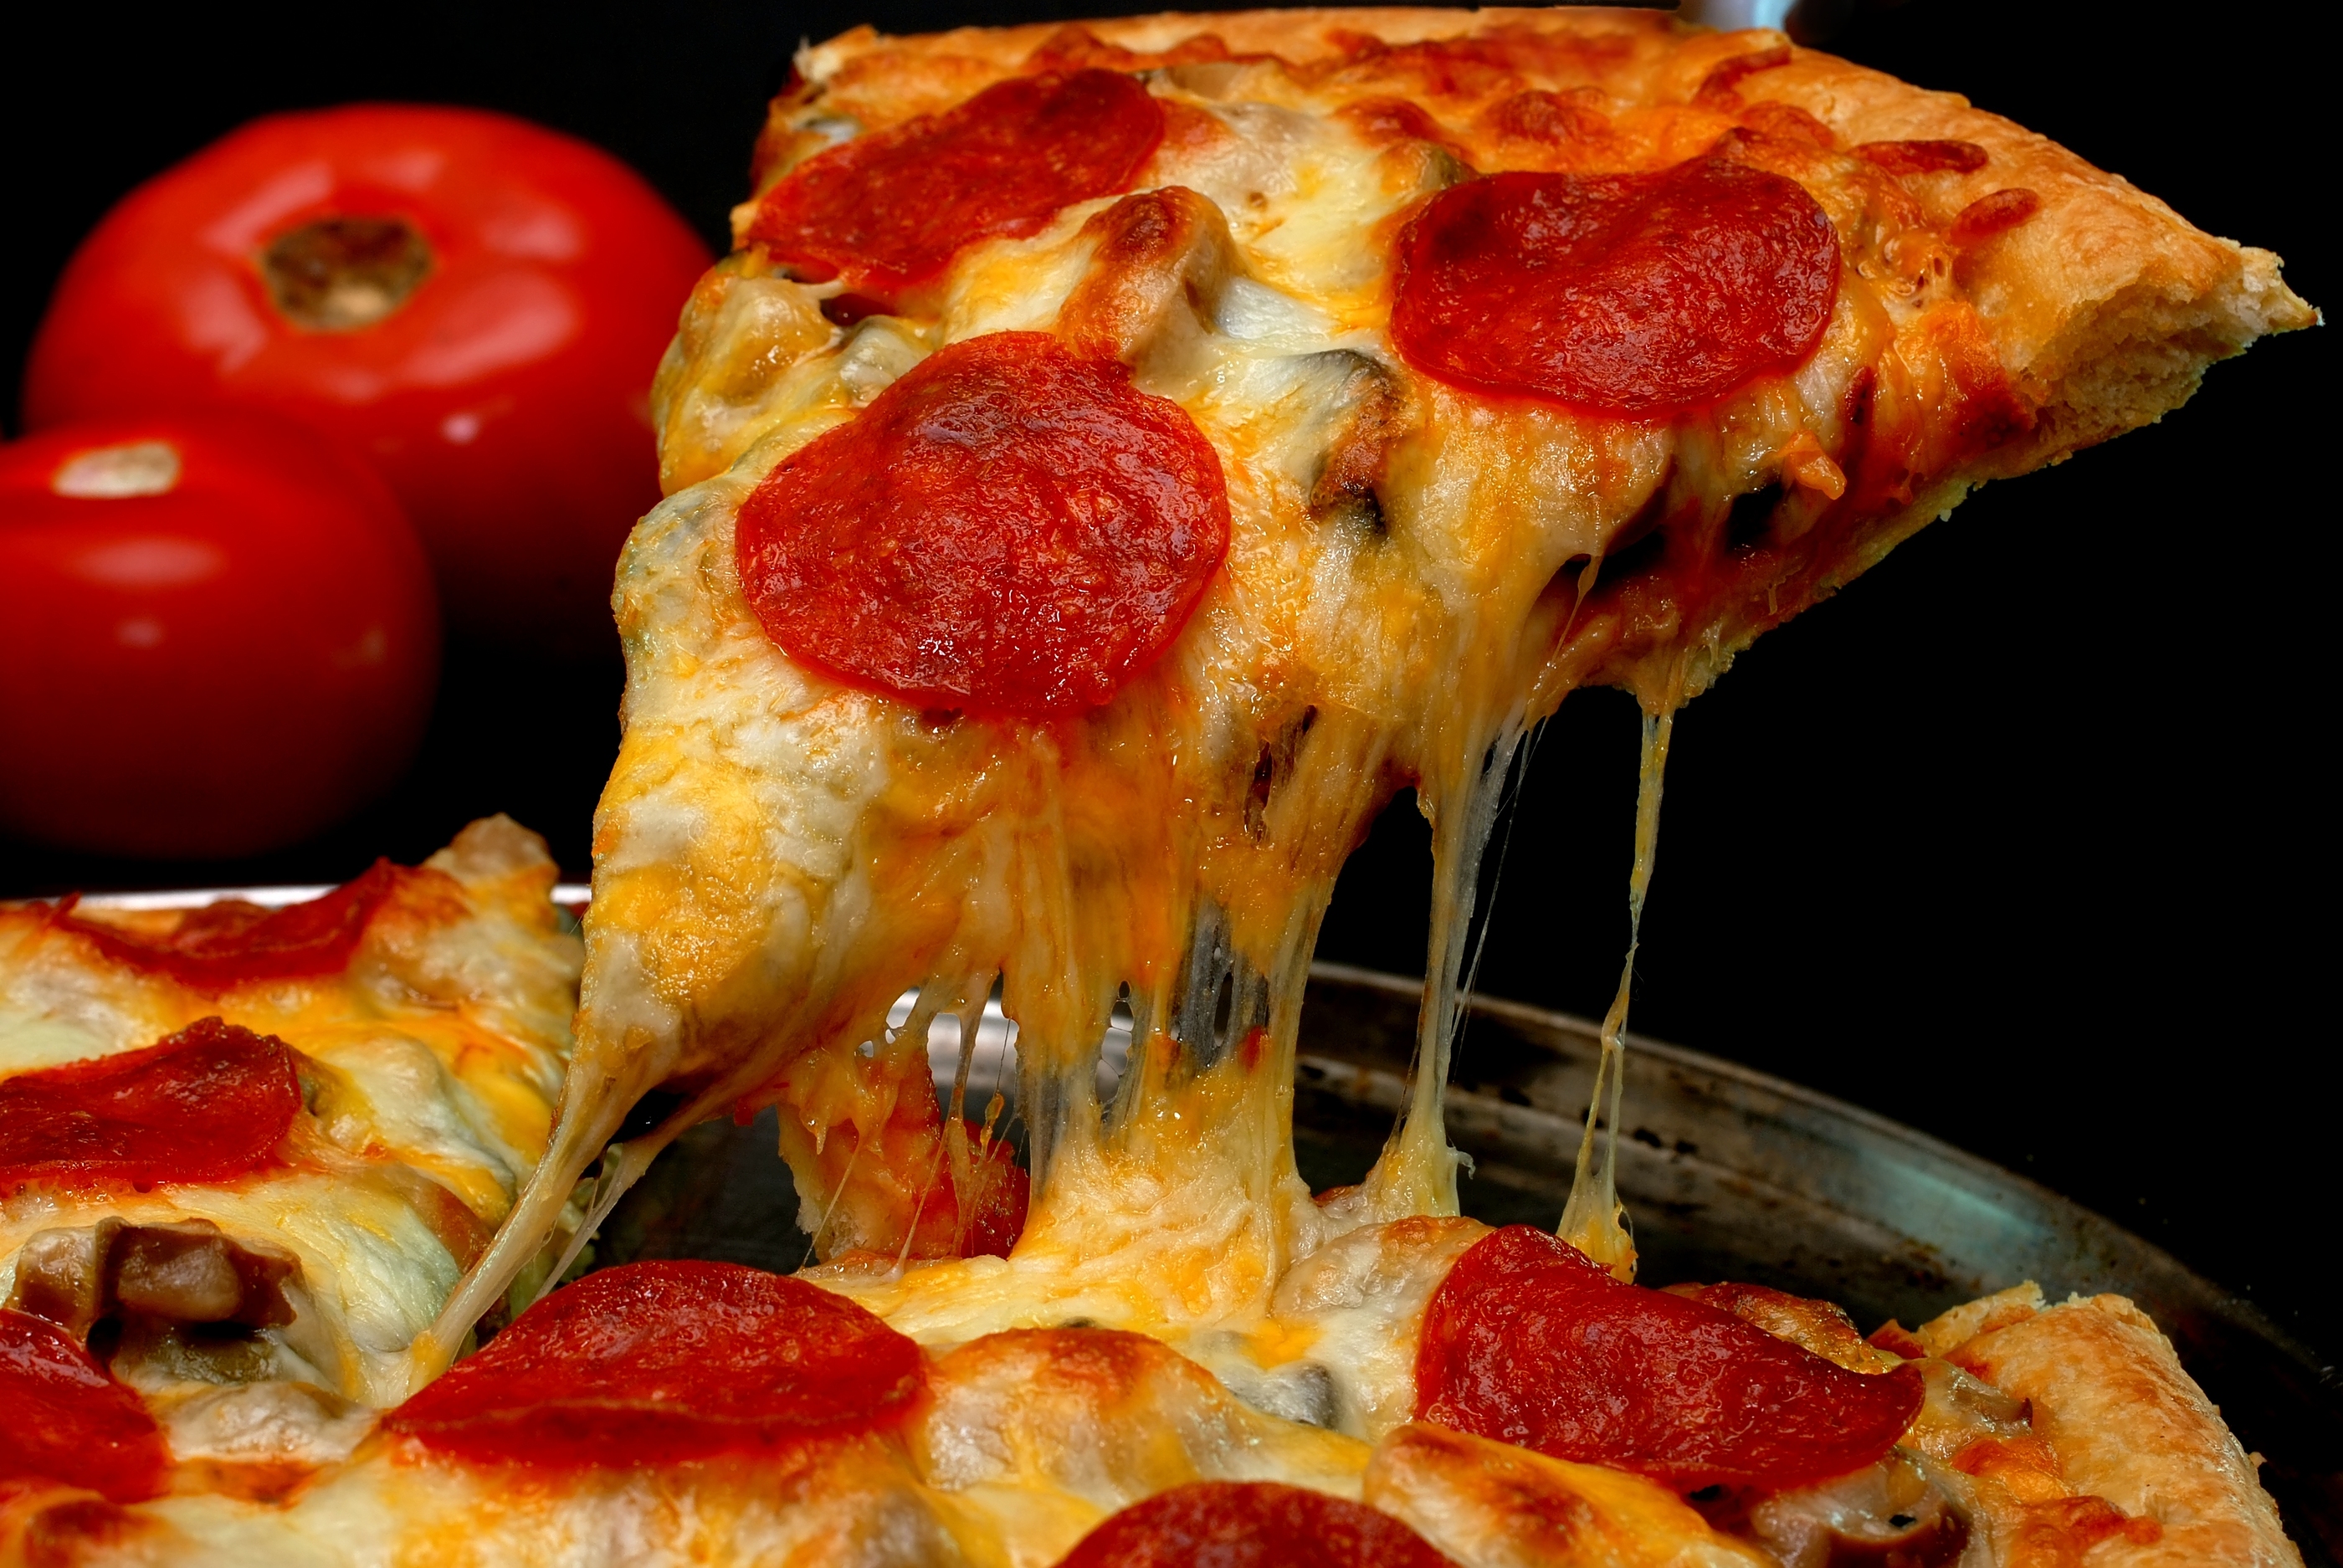 Pizza ai peperoni o pepperoni pizza? – BUTAC - Bufale un tanto al chilo